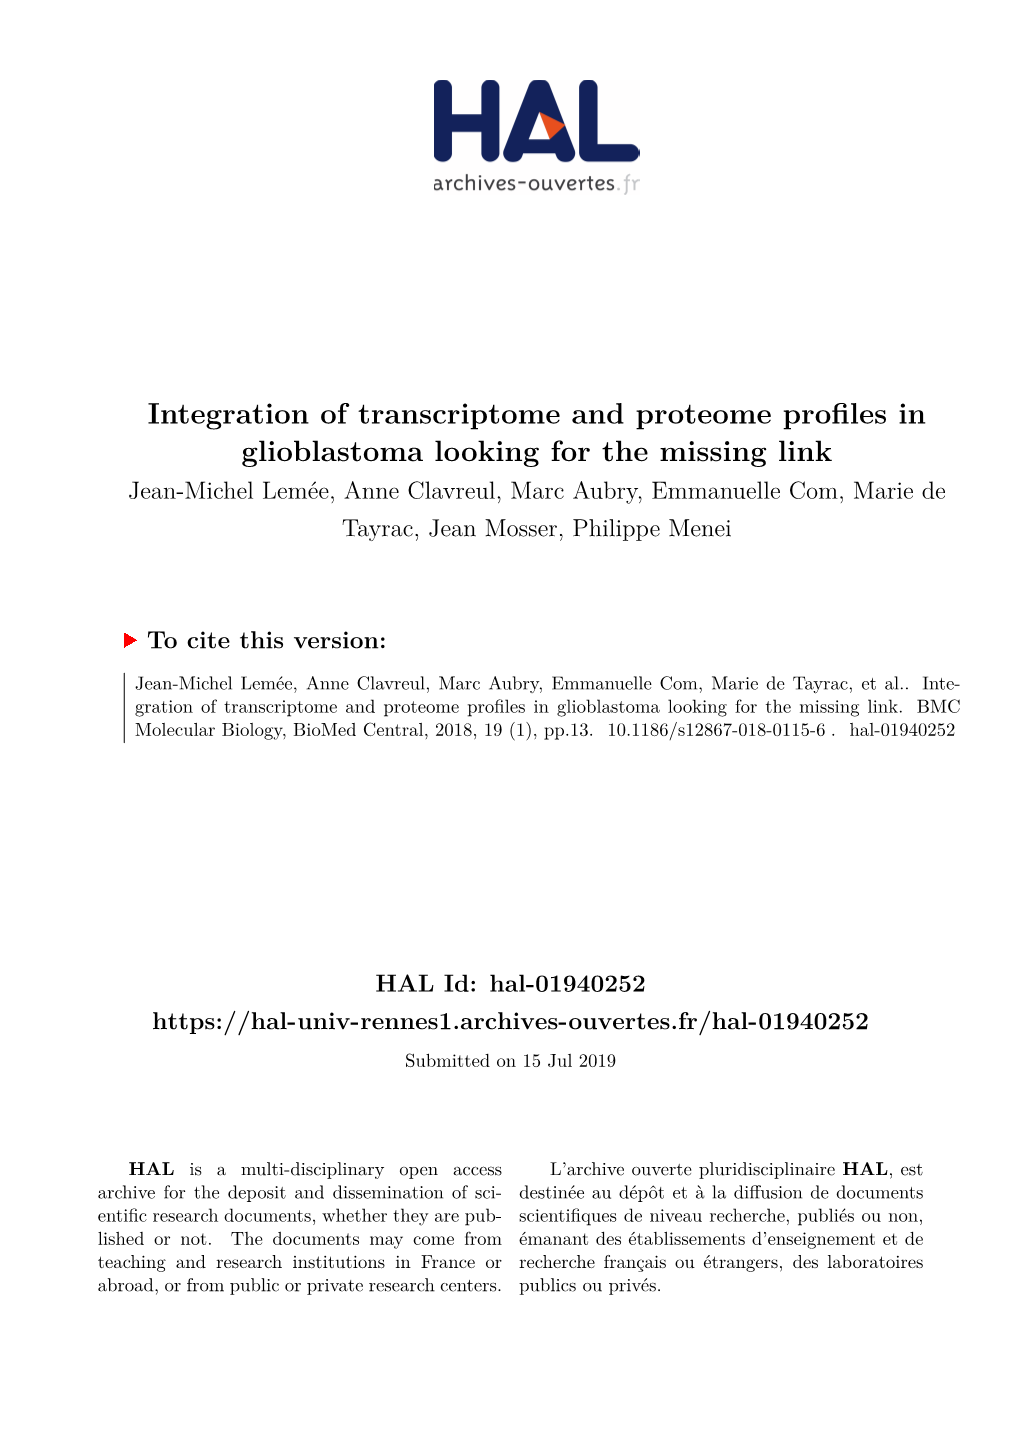 Integration of Transcriptome and Proteome Profiles in Glioblastoma